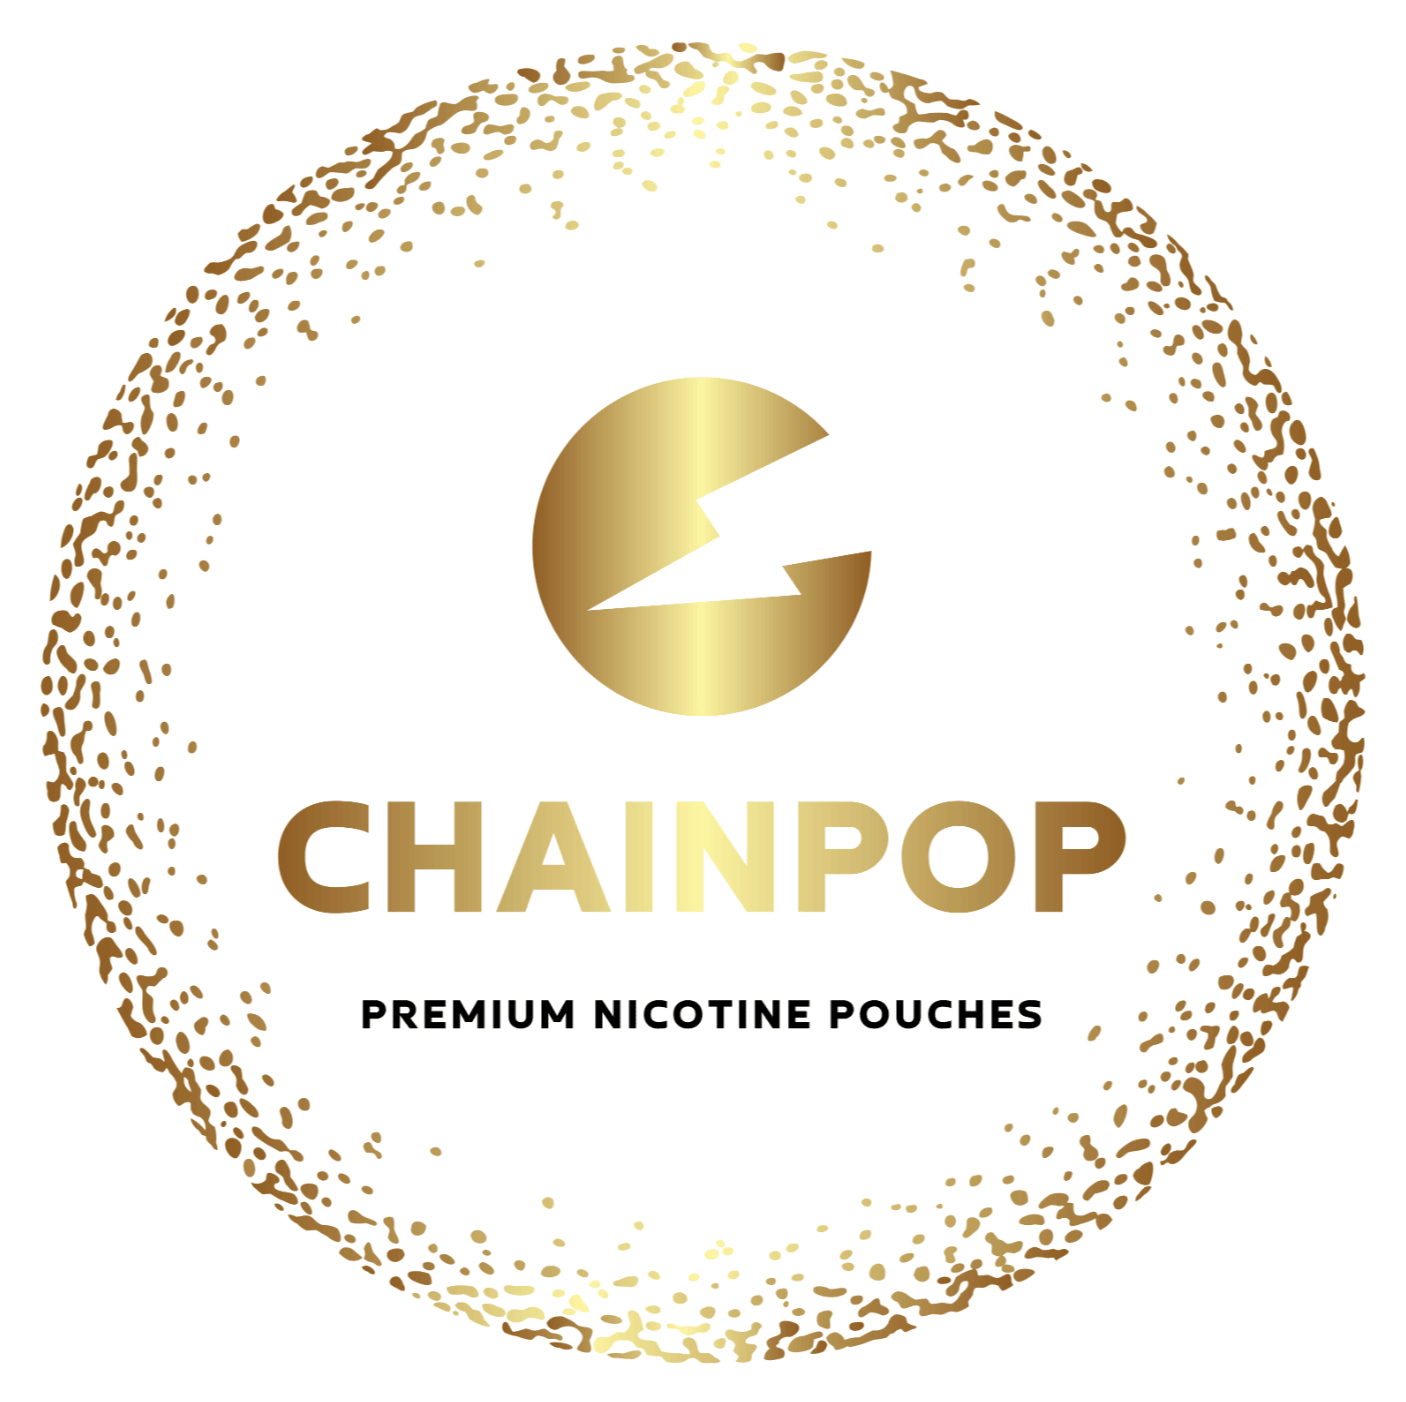 Nikotínové vrecká Chainpop logo